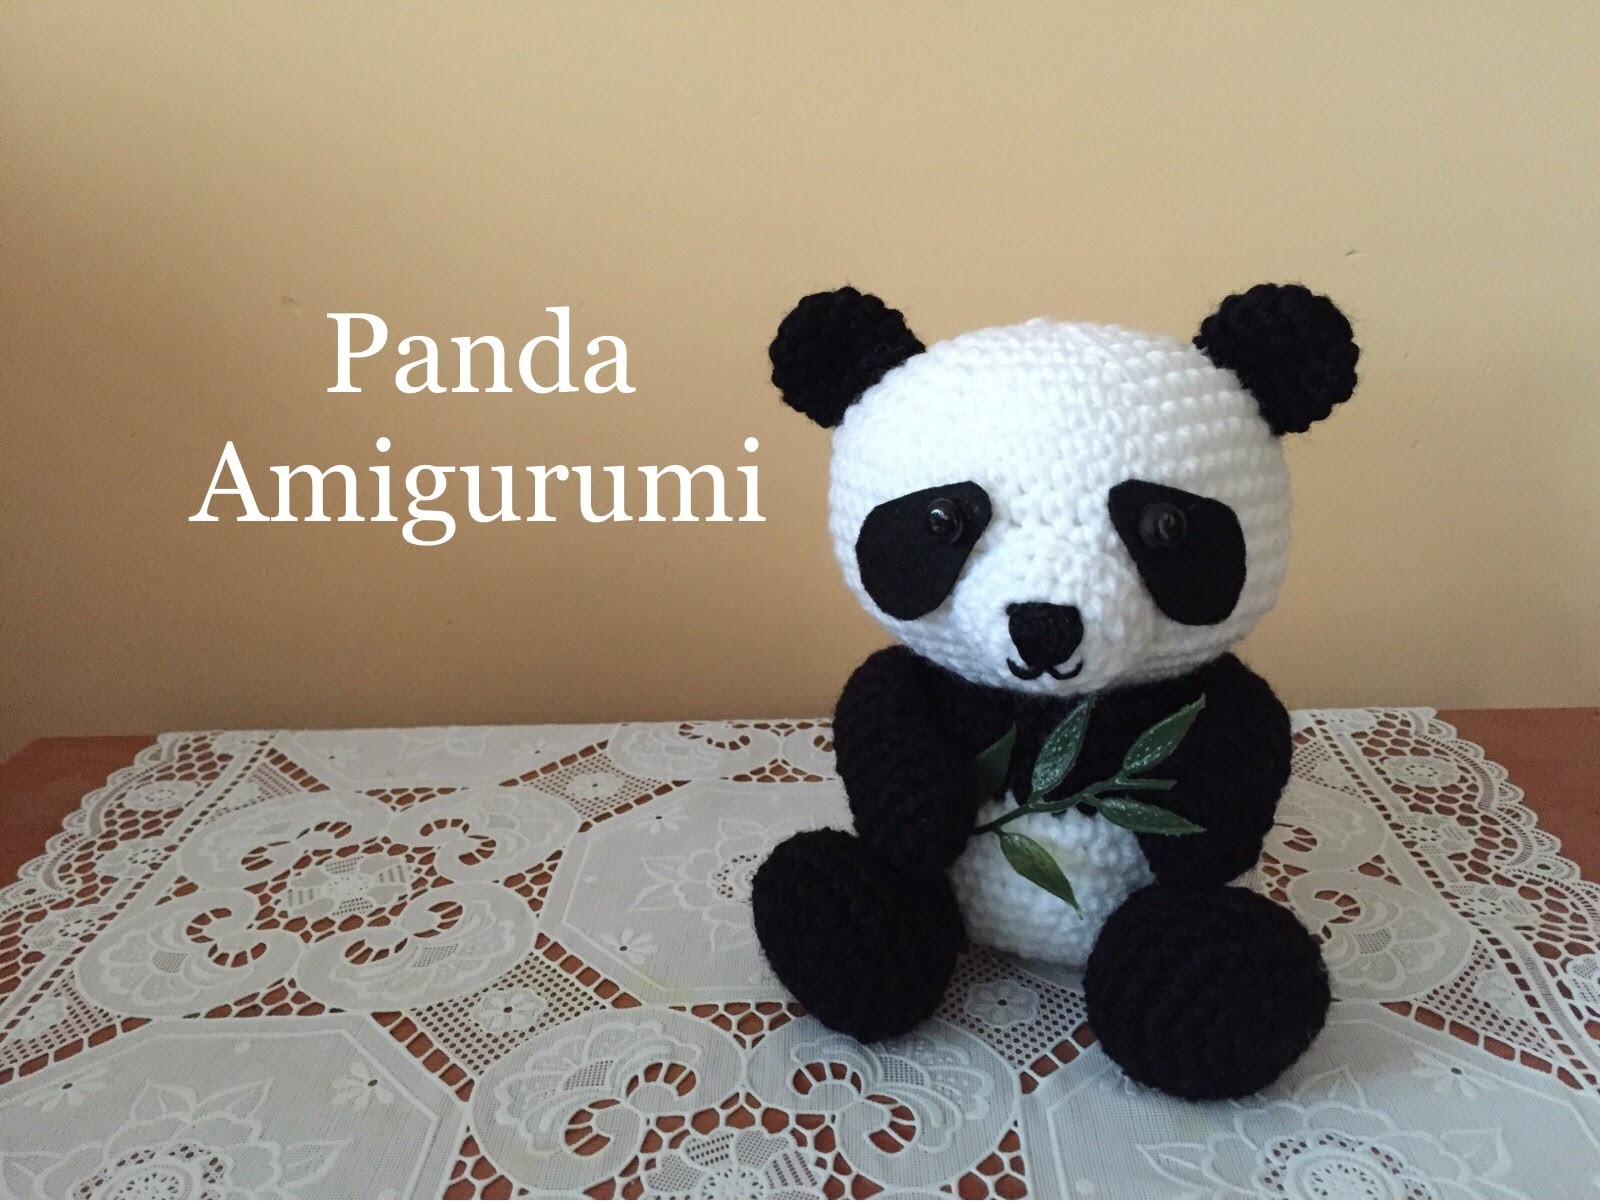 Panda Amigurumi (tutorial)